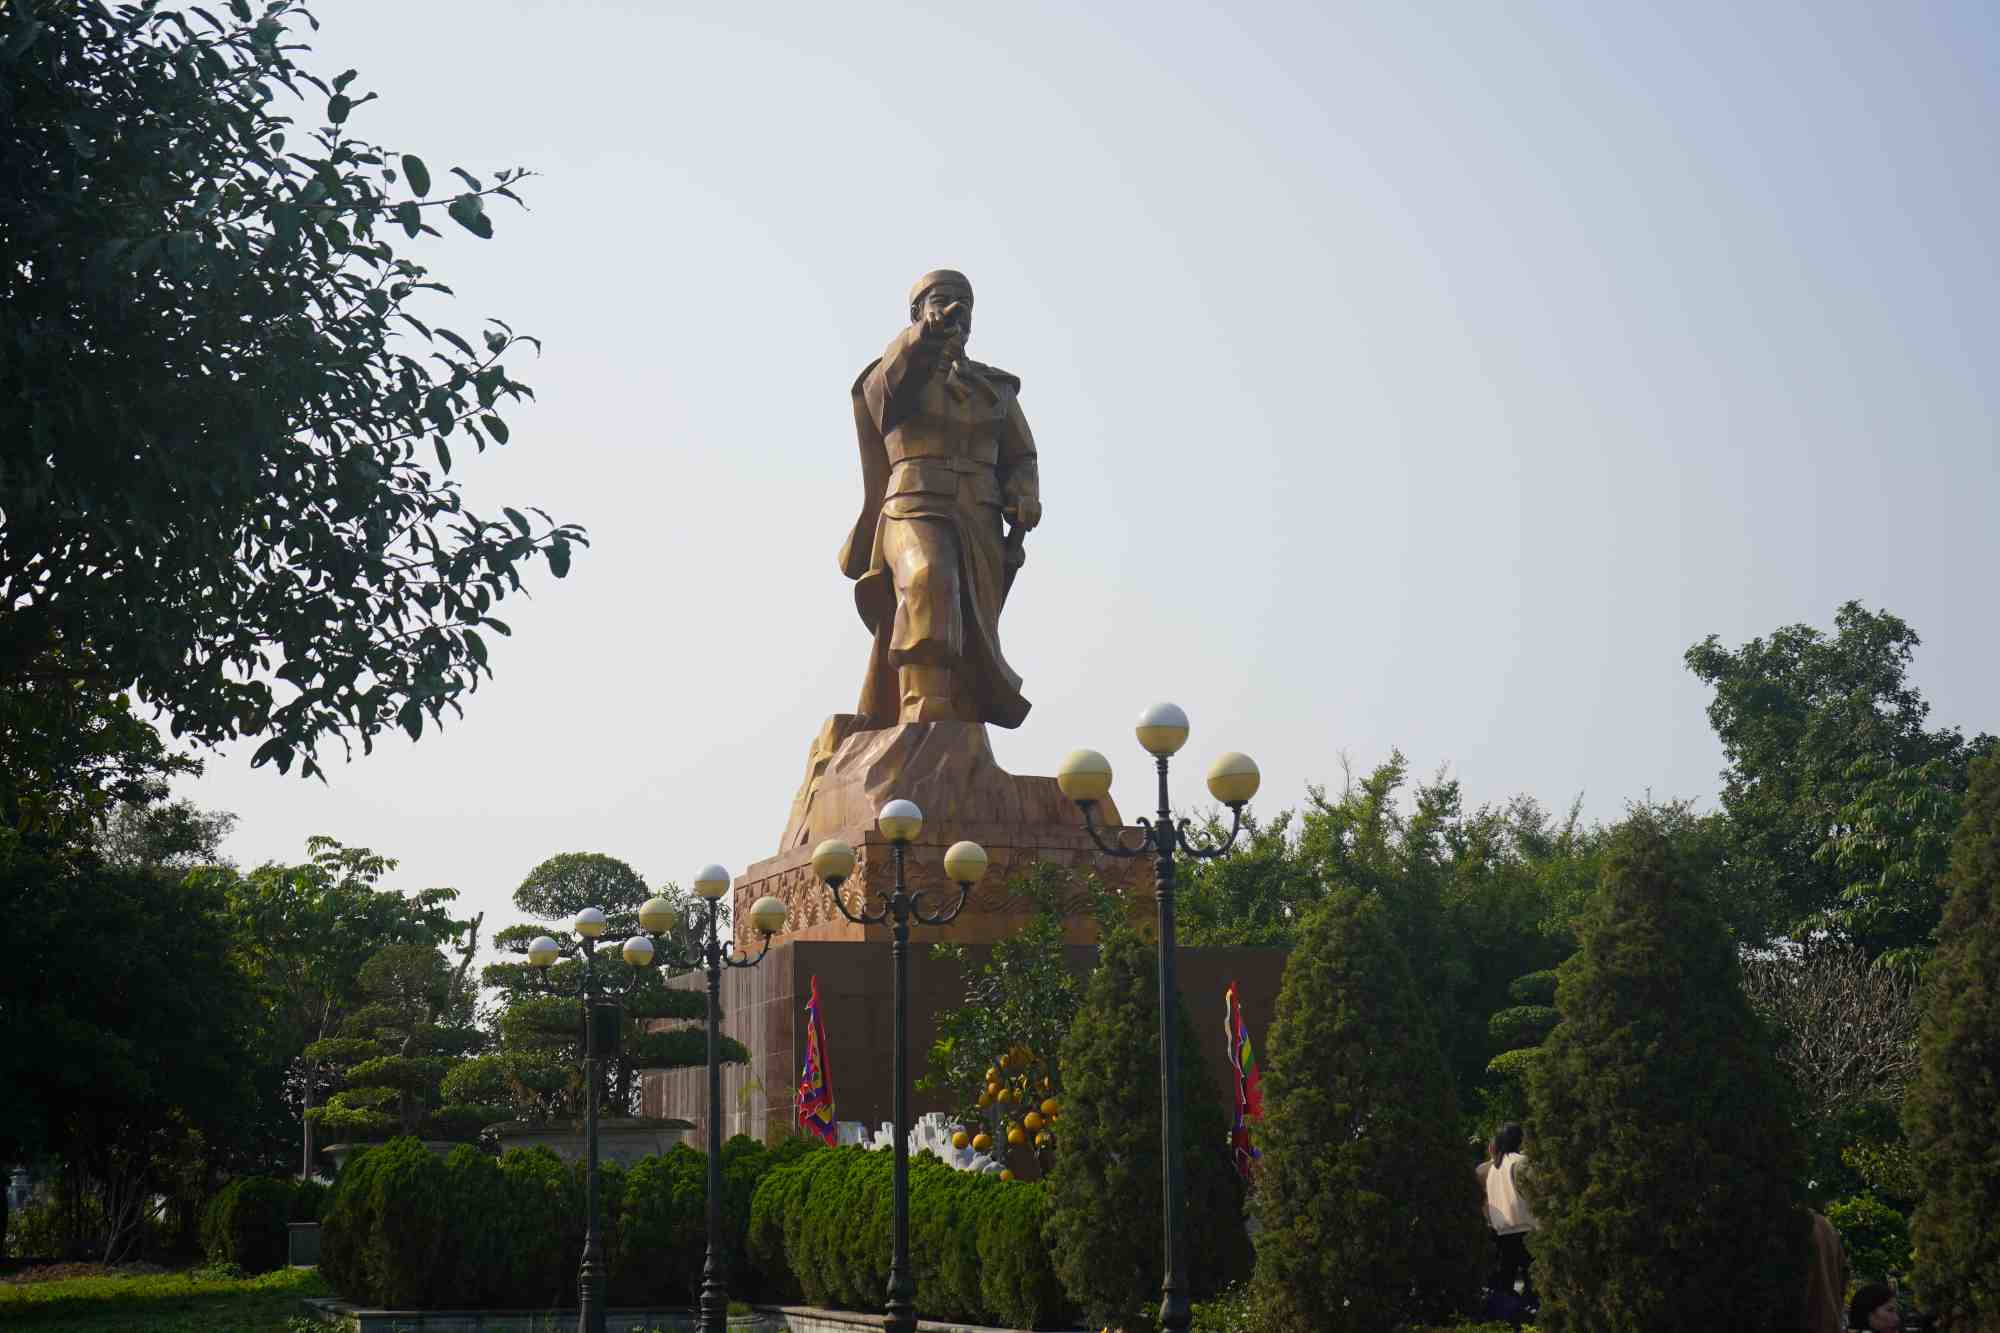 Đặc biệt trong năm 2010 với việc khánh thành hạng mục công trình xây dựng tượng đài Đức Vương Ngô Quyền được tại khu vực khuôn viên di tích mở rộng của Từ Lương Xâm có ý nghĩa lớn trong việc giáo dục cho các thế hệ về lòng yêu nước tự hào dân tộc.